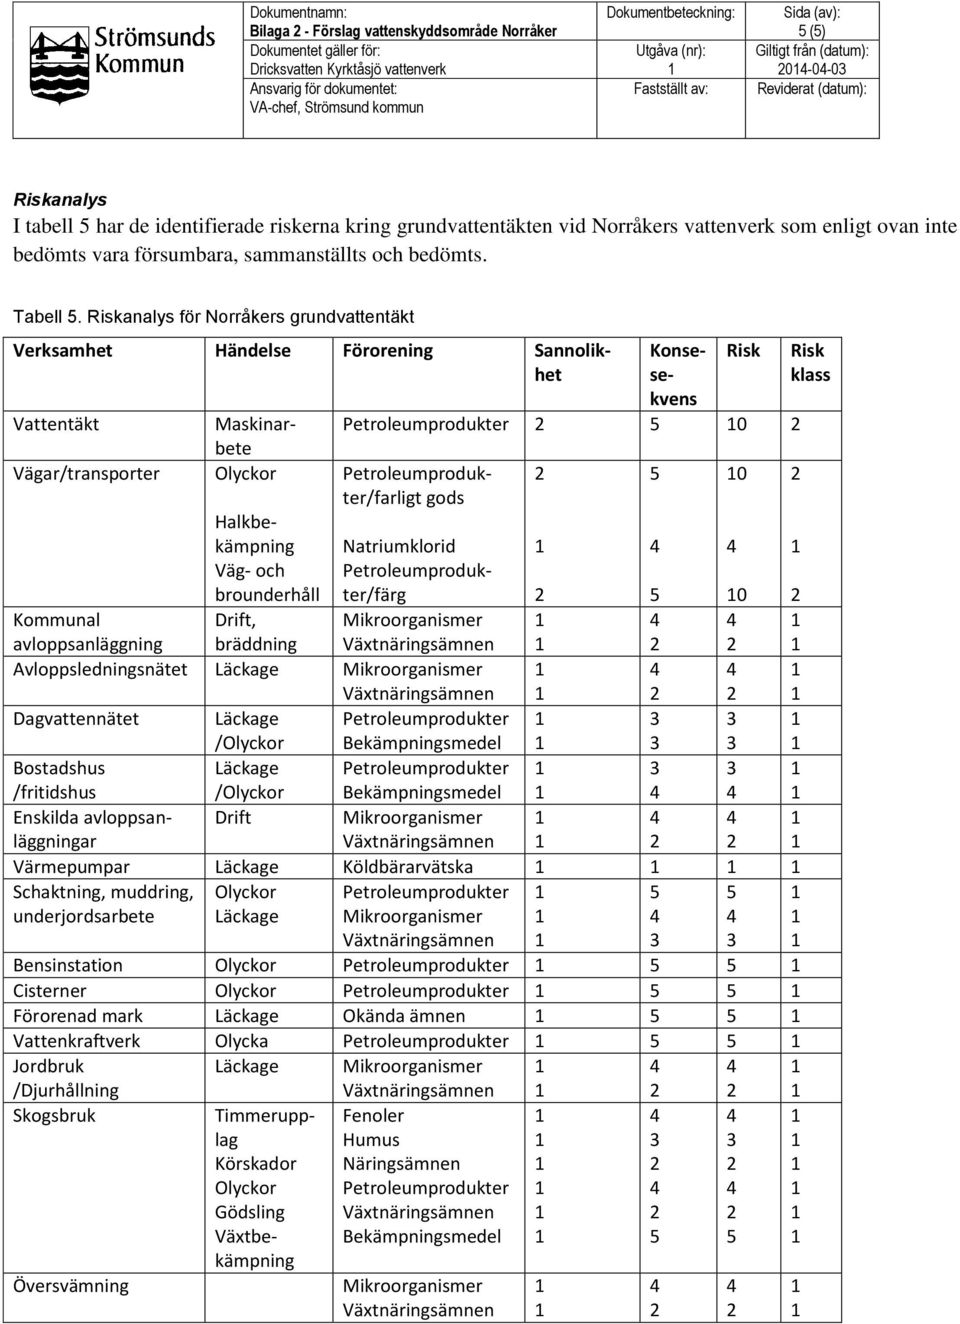 Riskanalys för Norråkers grundvattentäkt Vattentäkt Vägar/transporter Konsesekvens Maskinarbete Olyckor Halkbekämpning Väg- och brounderhåll Drift, bräddning Verksamhet Händelse Förorening